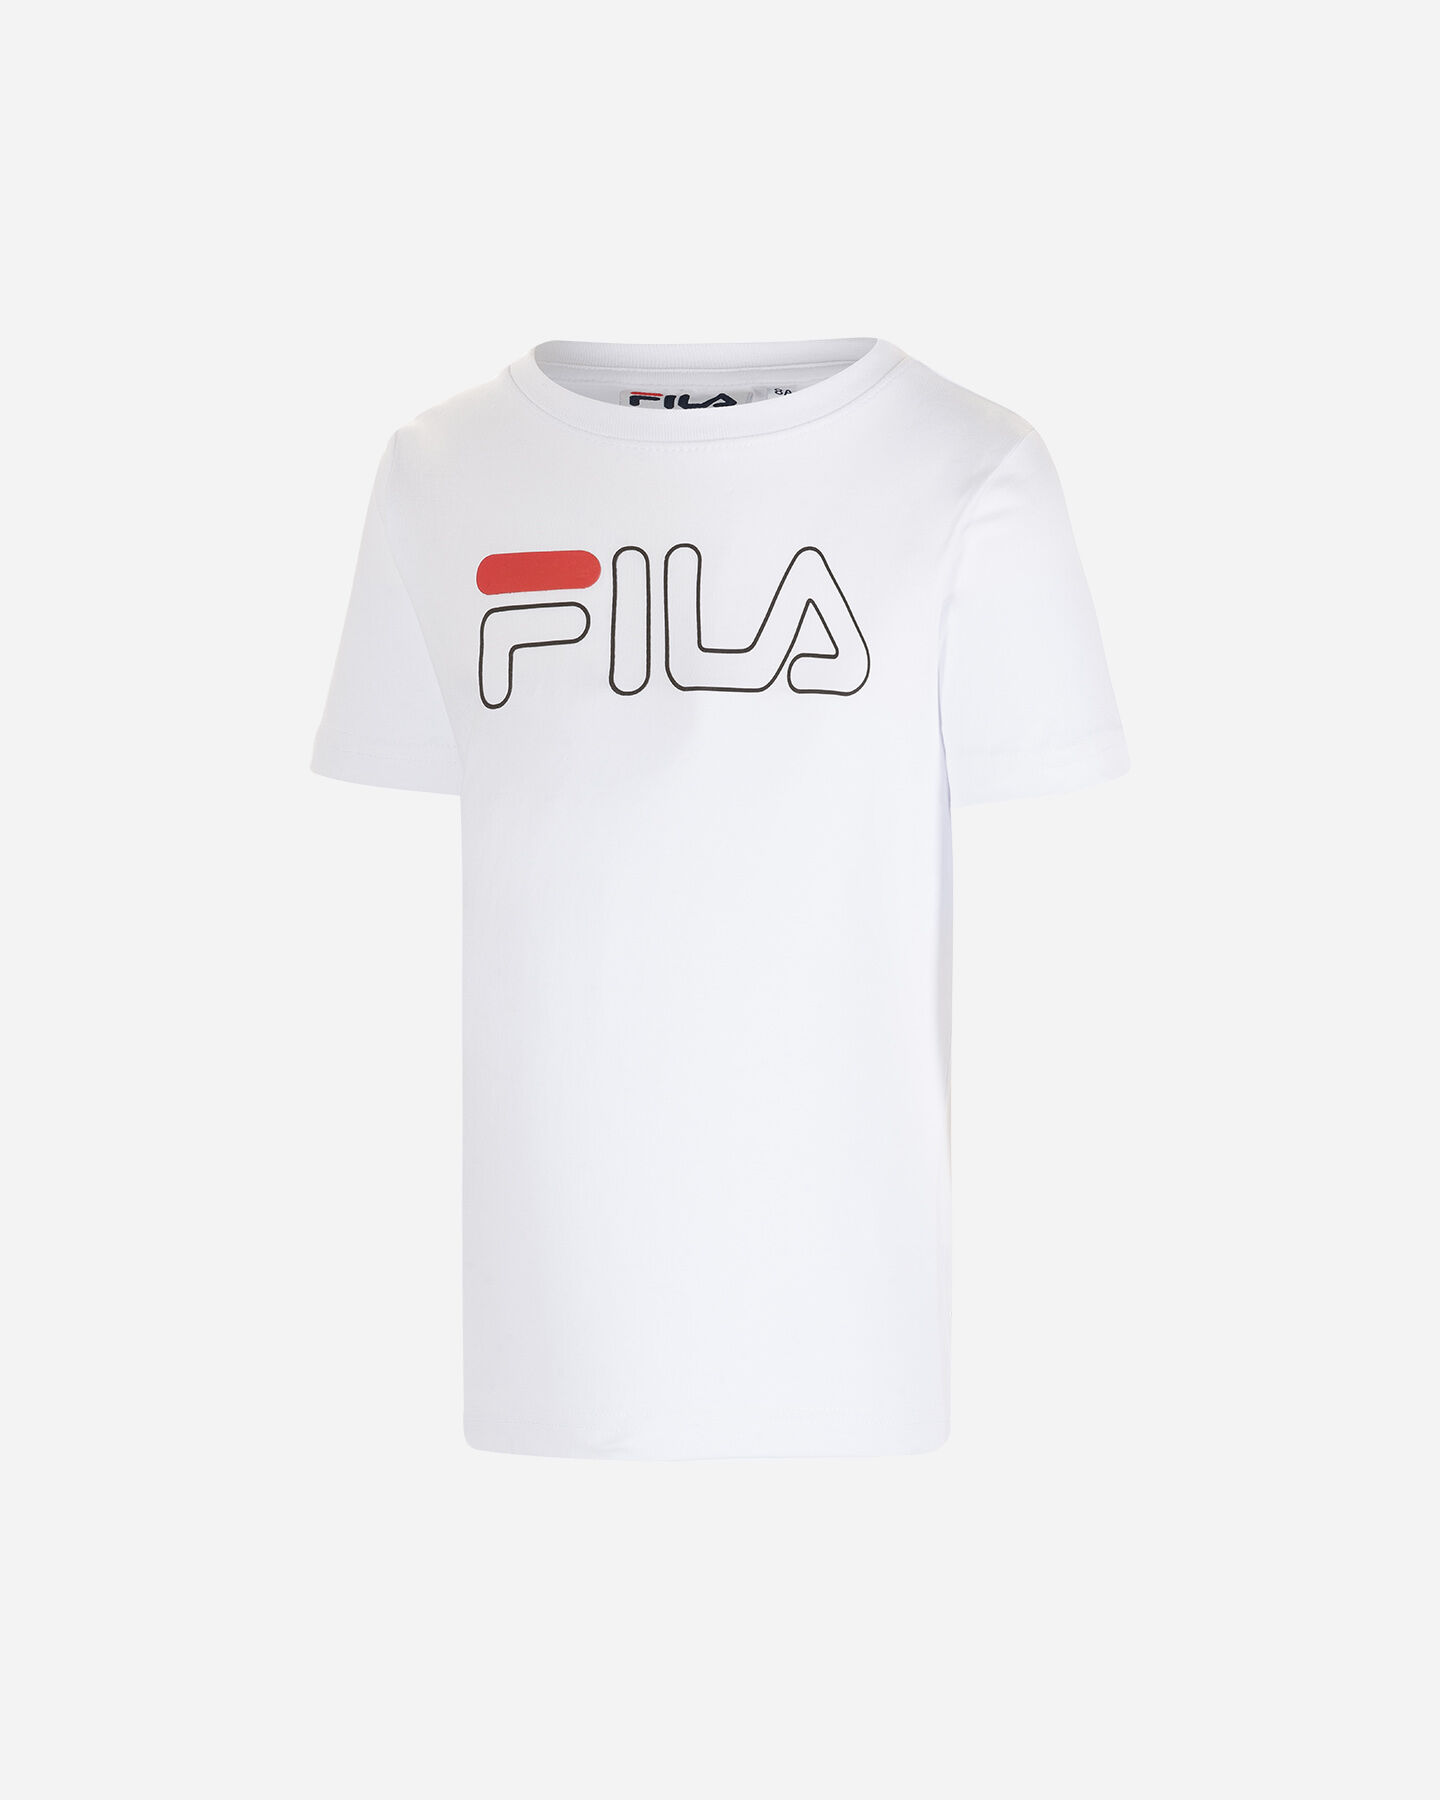  T-Shirt FILA SIMPLE BIG LOGO JR S4088599|001|4A scatto 0